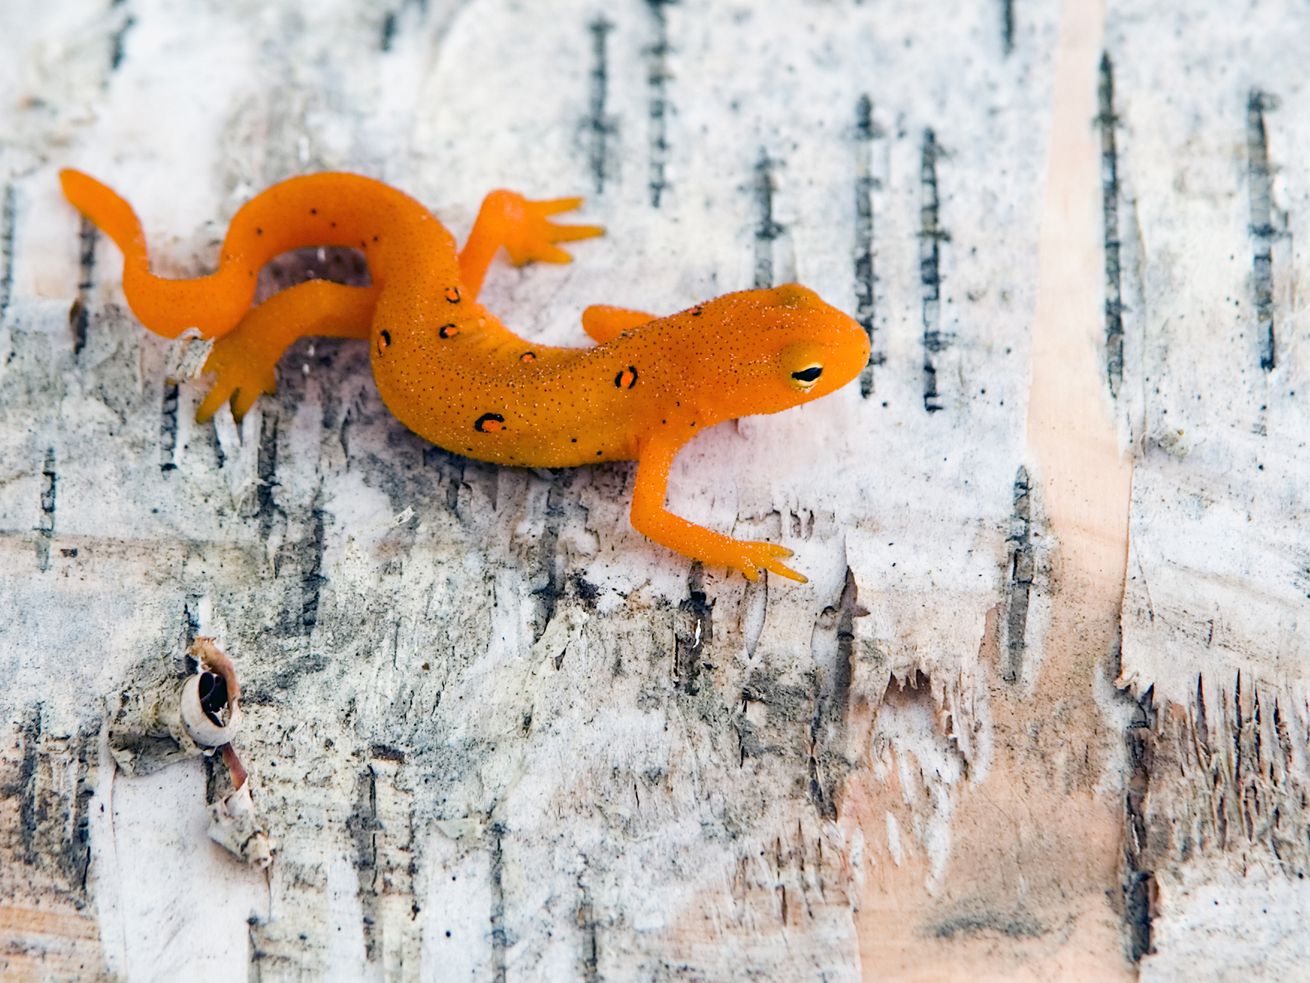 Salamanders have a secret to surviving climate change